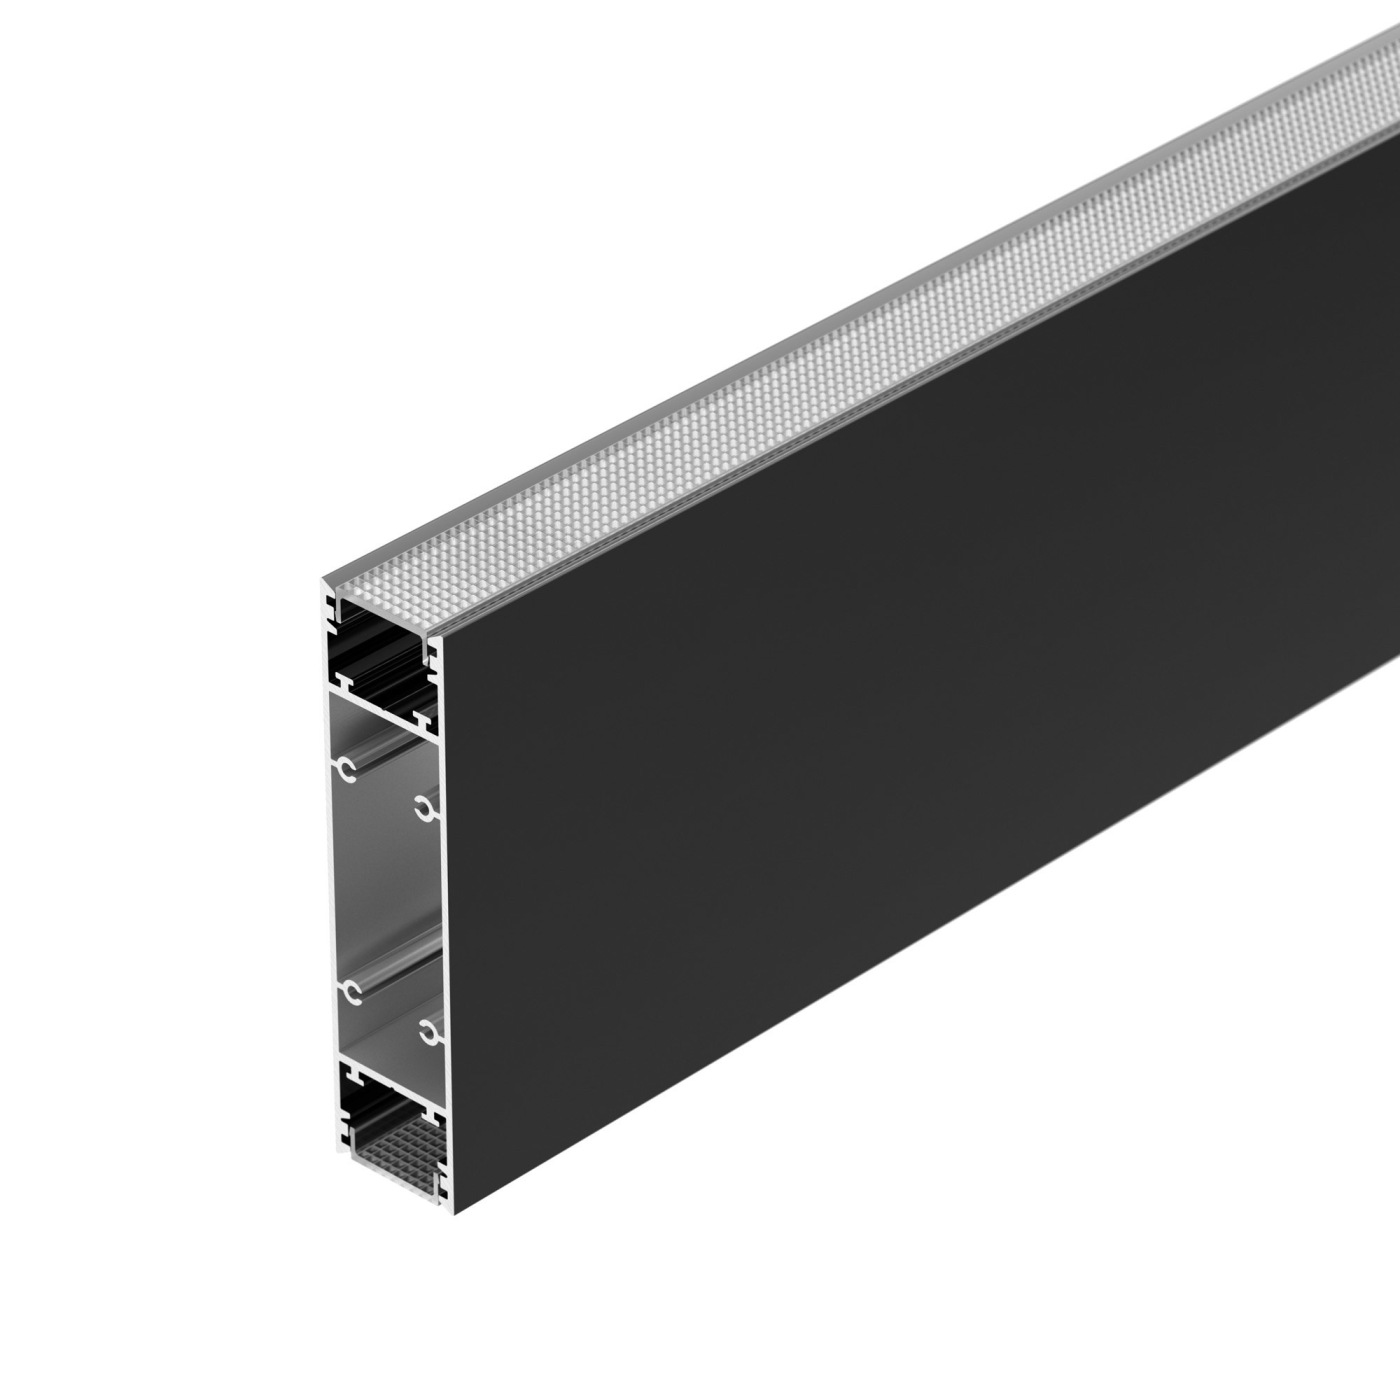 Профиль SL-LINE-25100-DUAL-2500 BLACK (Arlight, Алюминий) соединитель профиля sl line 25100 dual arlight металл